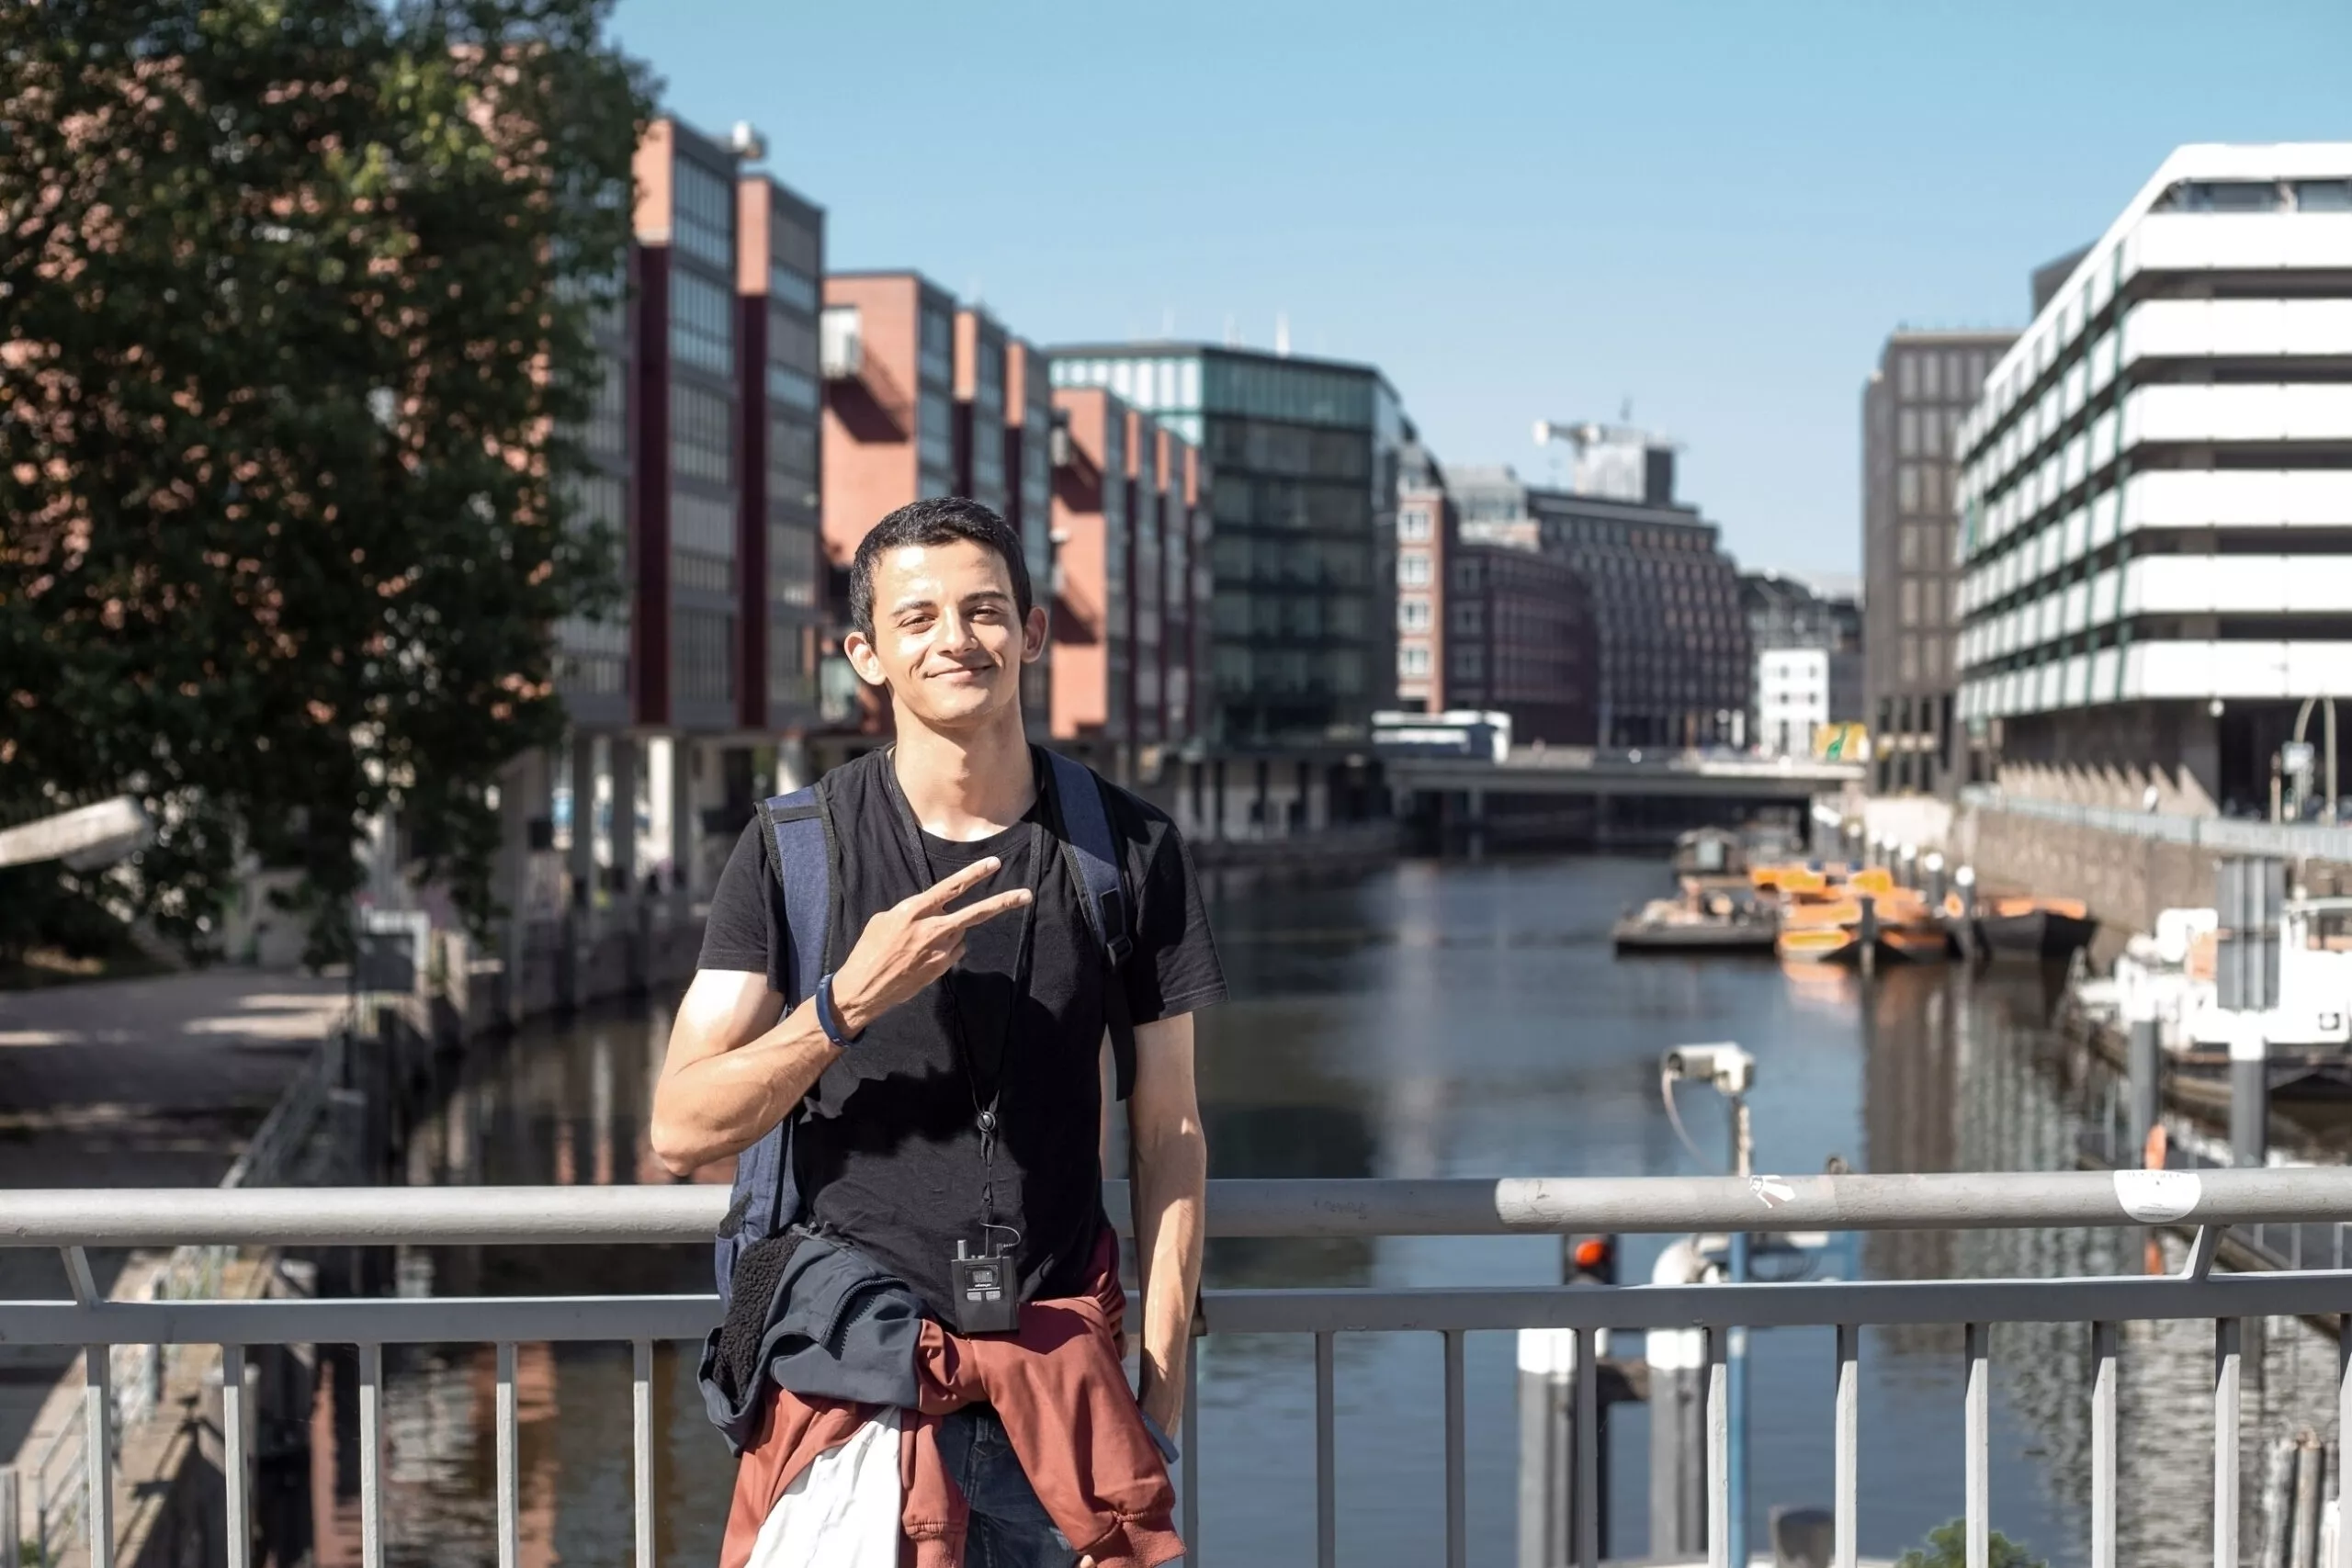 Giovane mediorientale con zaino in spalla cammina durante un'escursione eurotrip nel centro di Amburgo in Germania utilizzando l'audioguida e viene fotografato sullo sfondo dei canali della città in una soleggiata giornata estiva